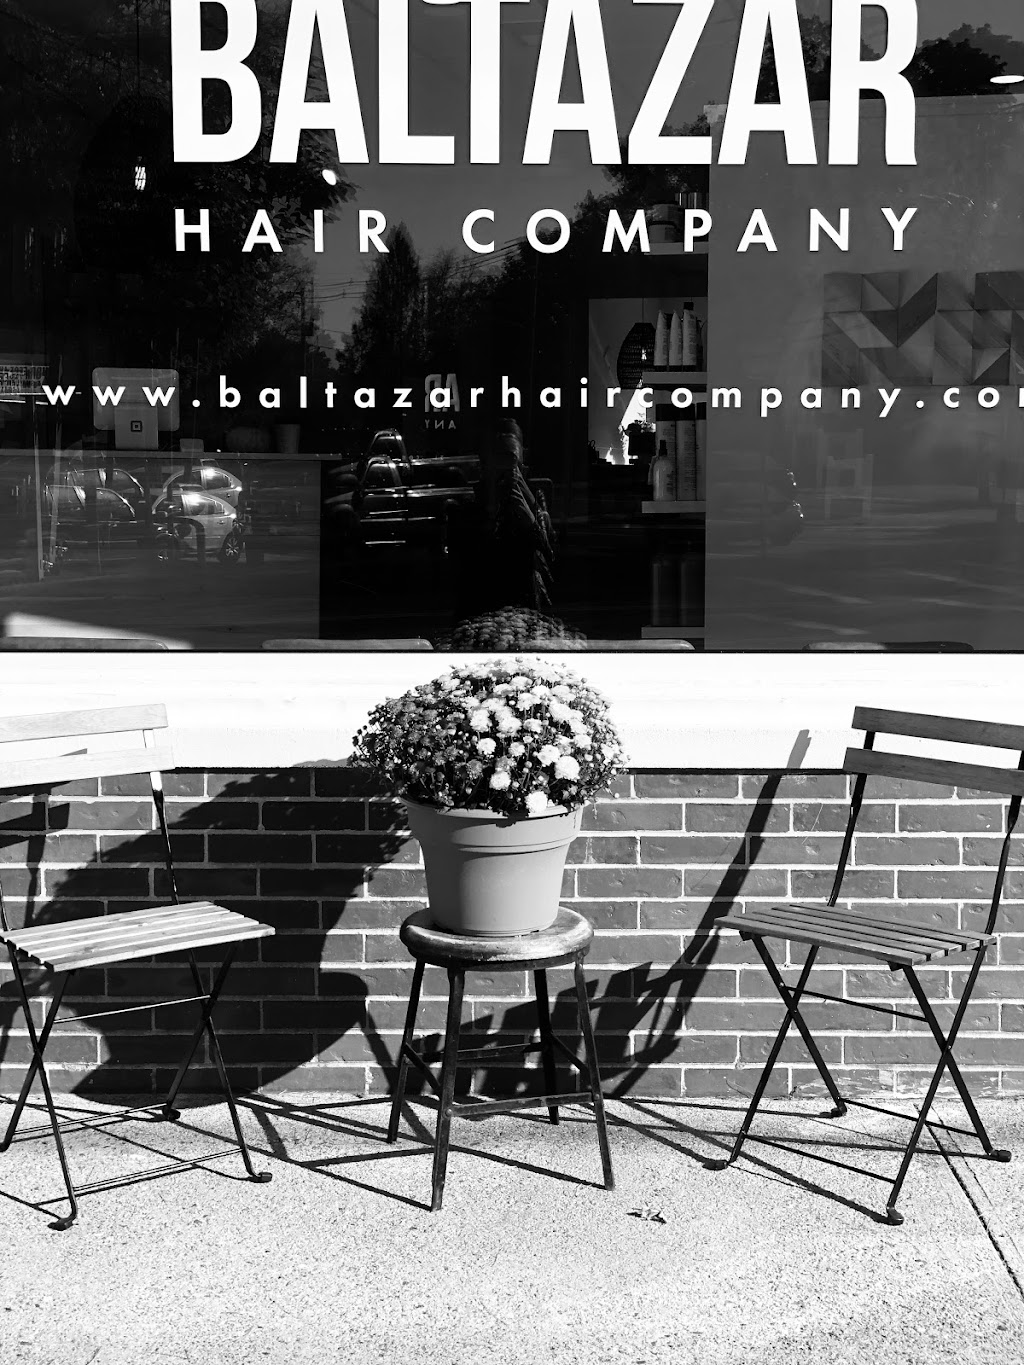 Baltazar Hair Company | 1 Springfield St, Wilbraham, MA 01095 | Phone: (413) 279-1677